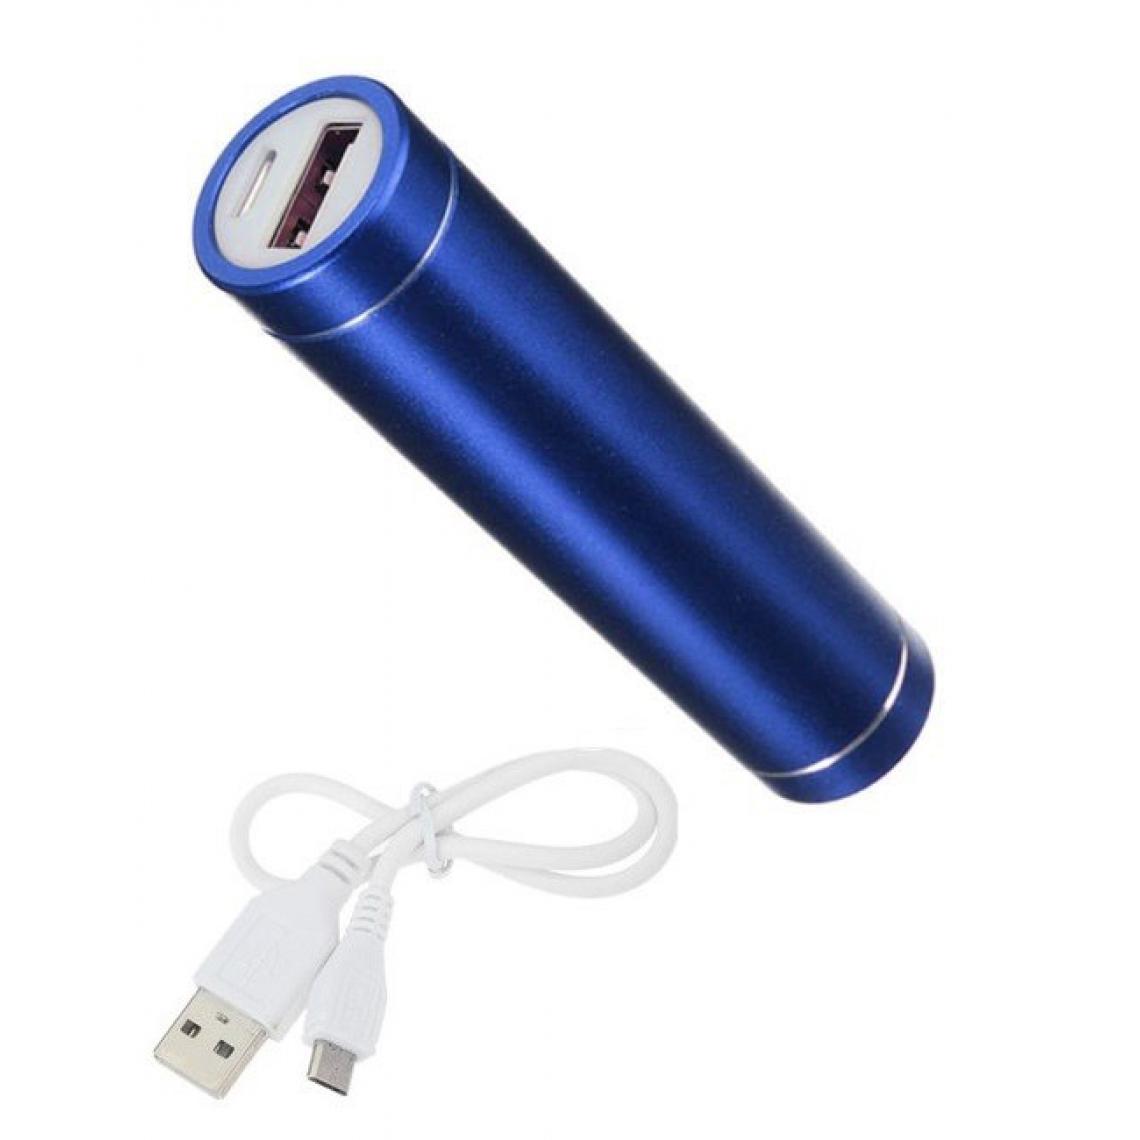 Shot - Batterie Chargeur Externe pour "WIKO Y81" Power Bank 2600mAh avec Cable USB/Mirco USB Secours Telephon (BLEU) - Chargeur secteur téléphone